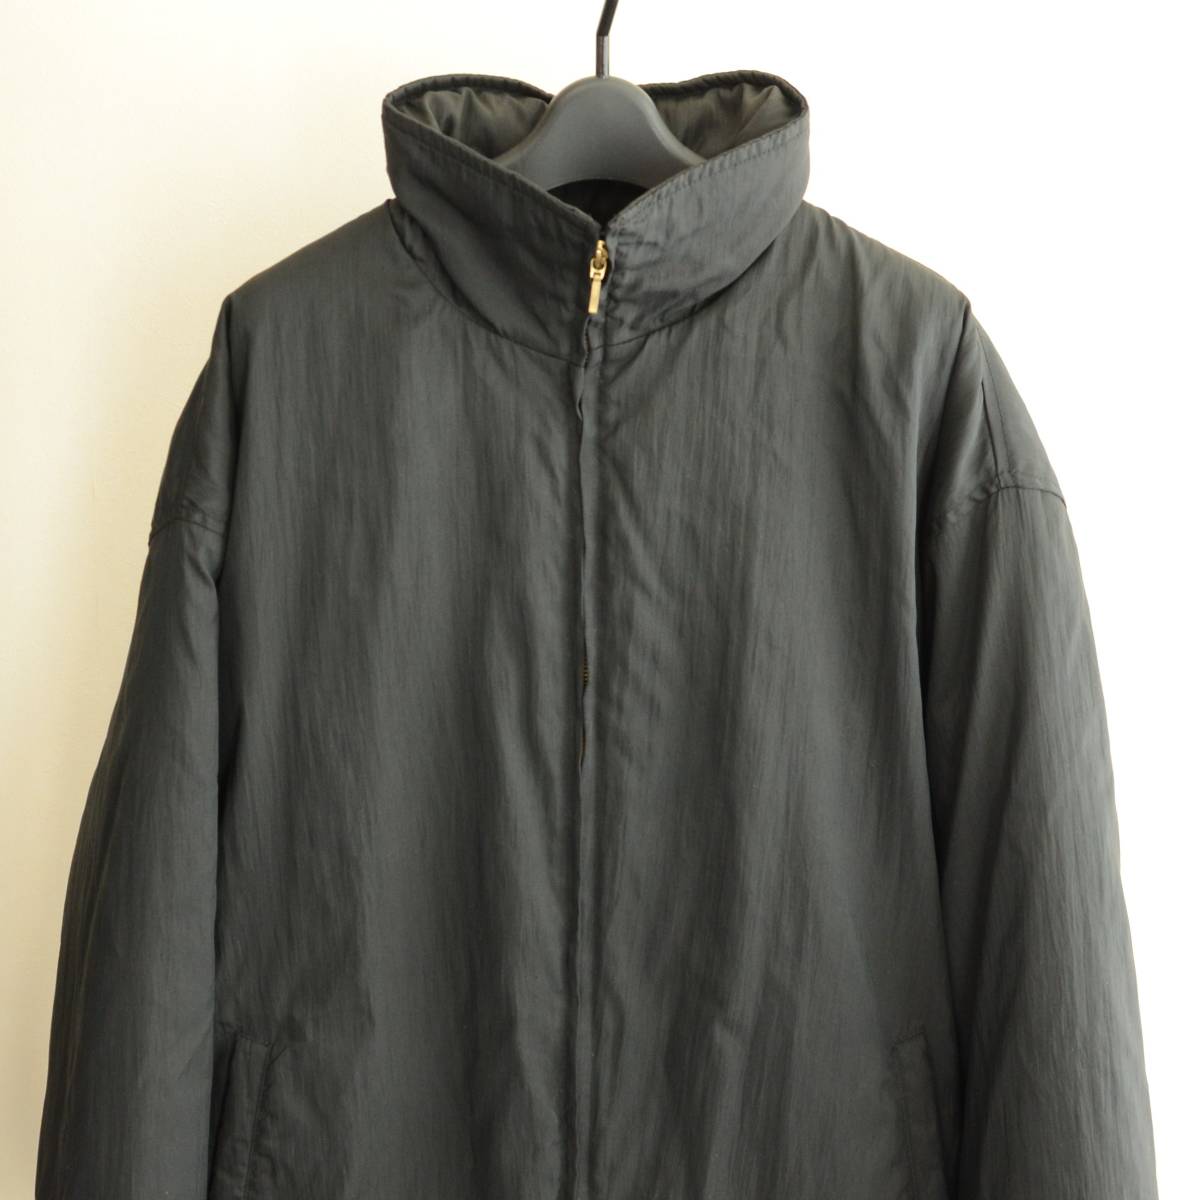 90s エンポリオアルマーニ 中綿入りジャケット アウター 黒 size 52